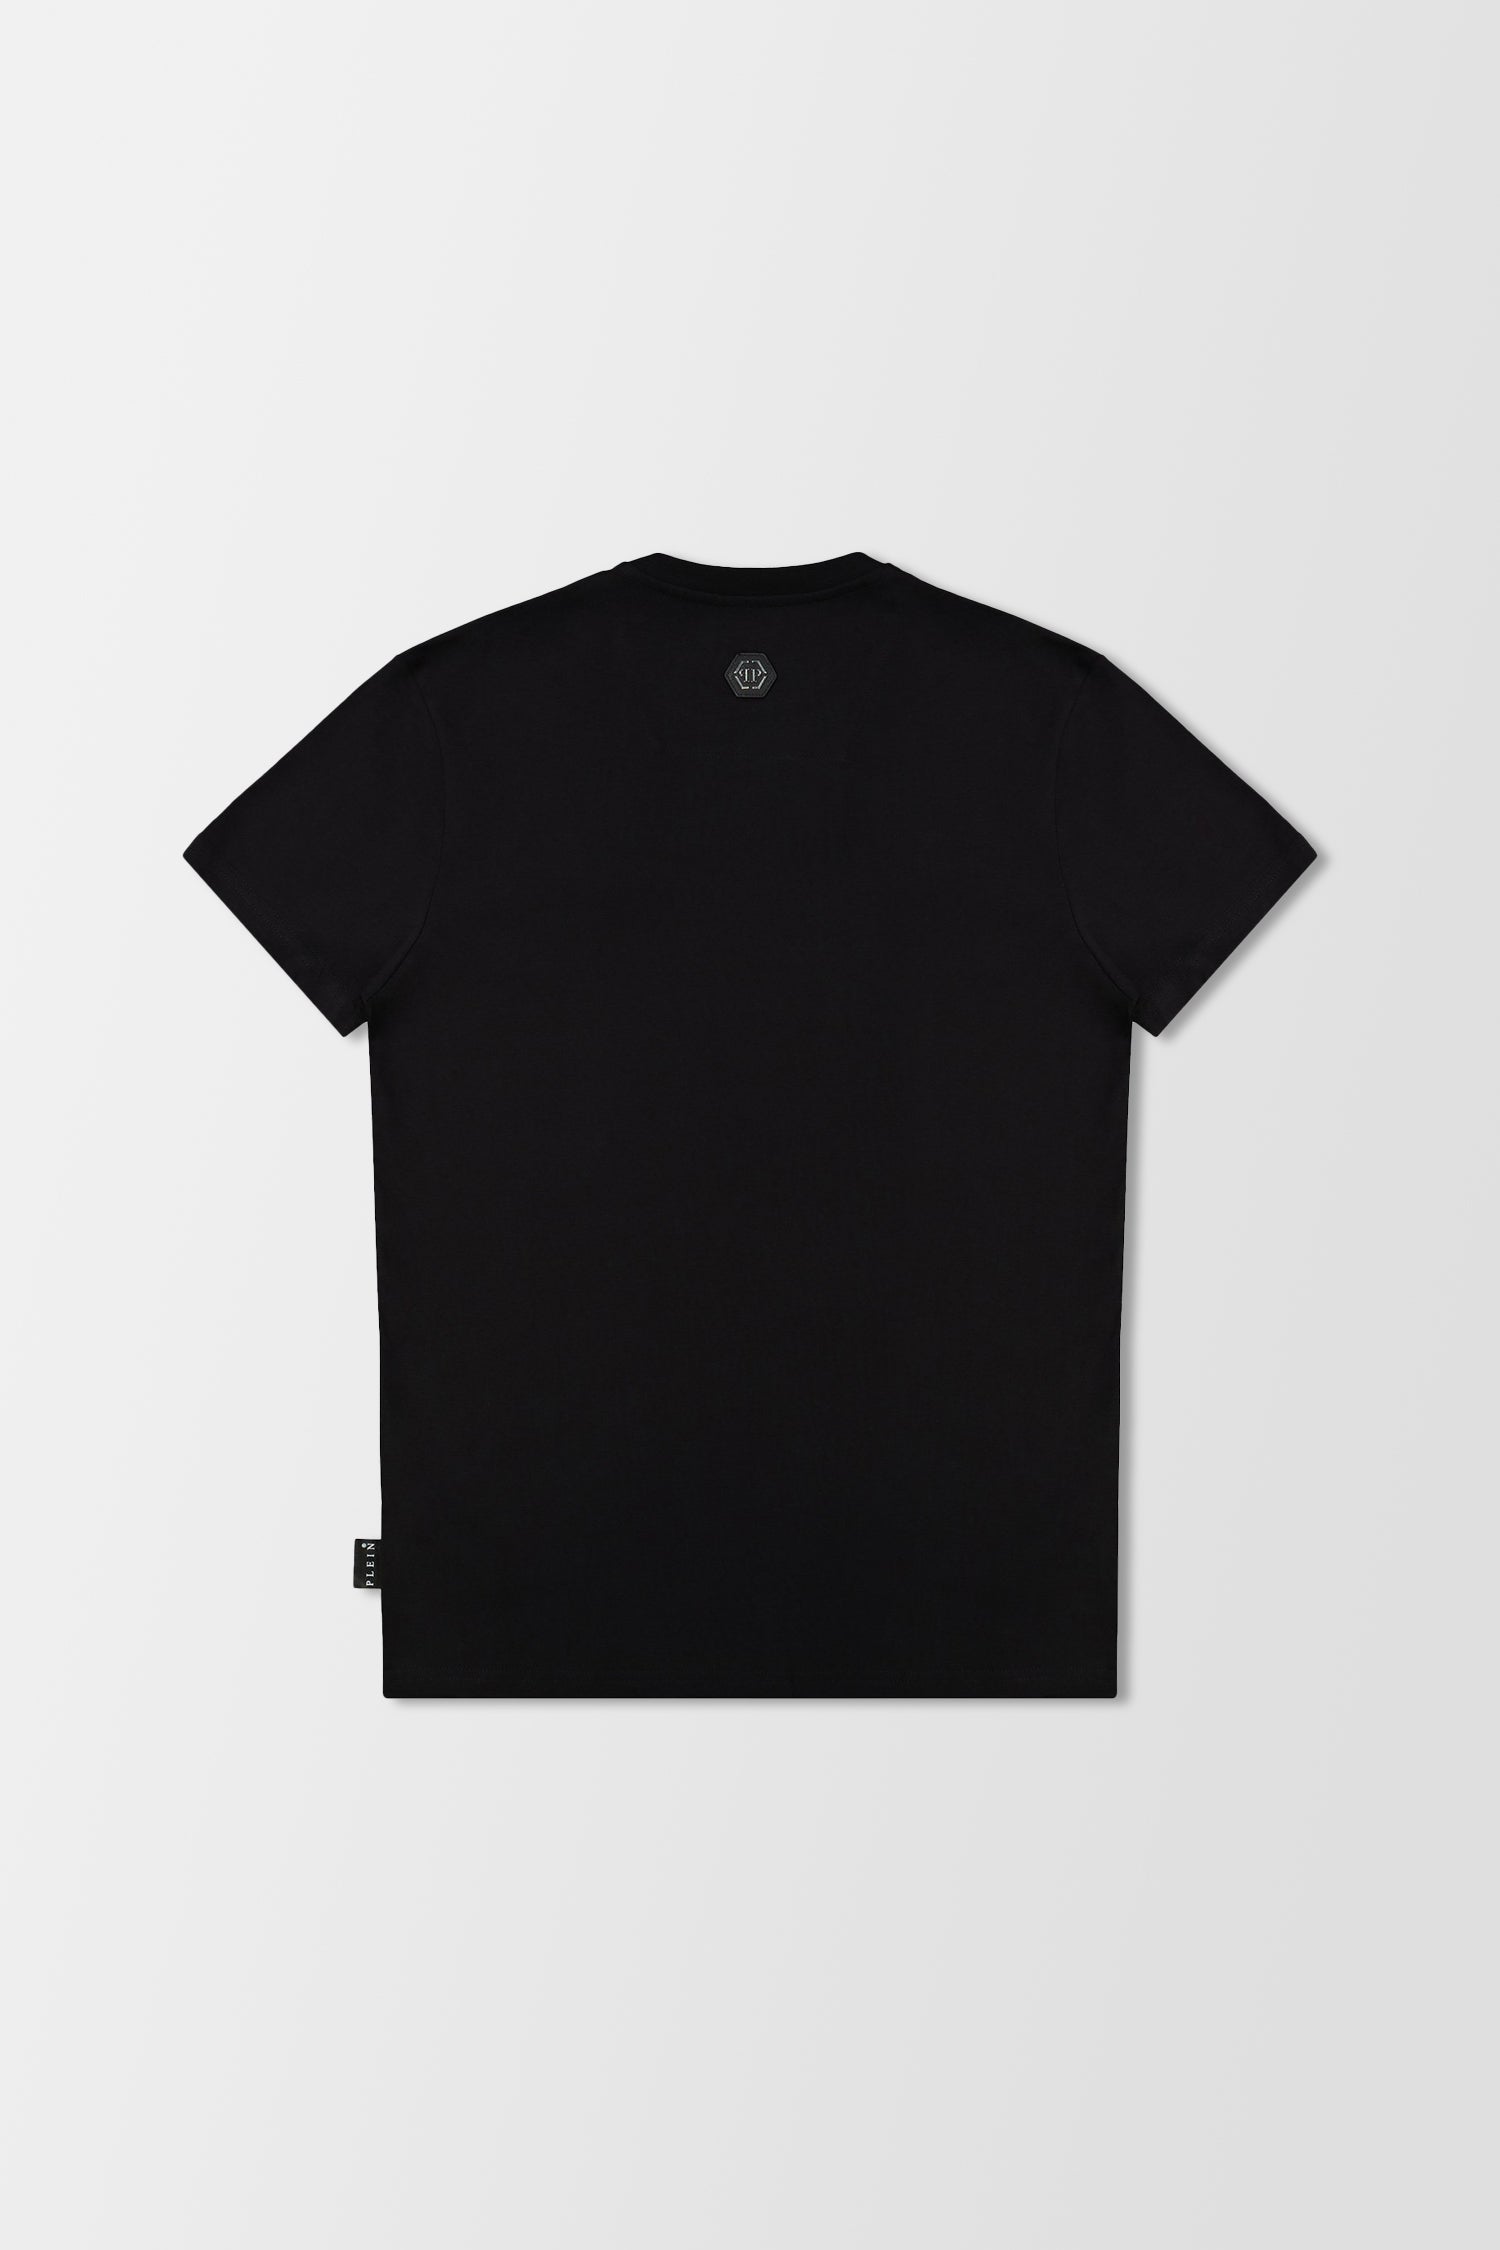 Philipp Plein Black Round Neck SS Hexagon T-Shirt